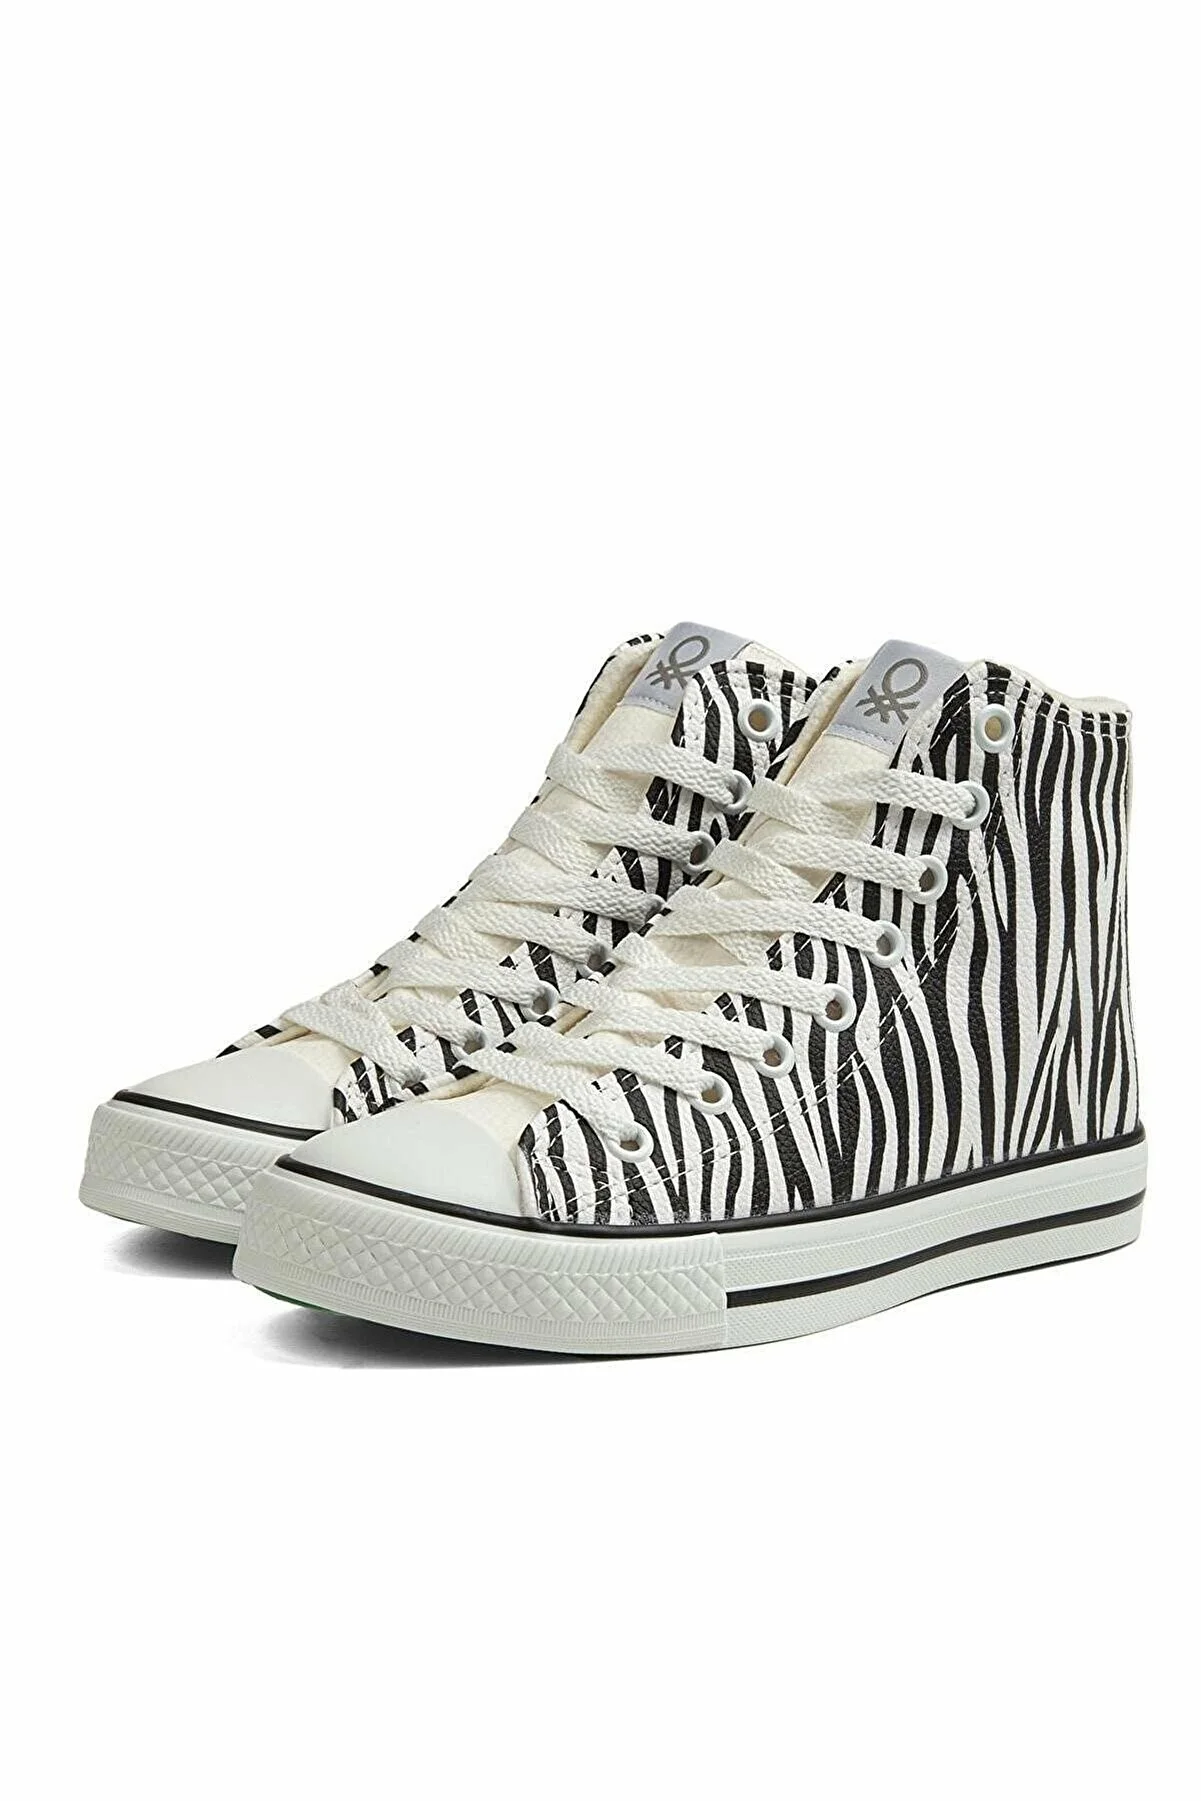 Kadın Spor Ayakkabı BN-30736-Zebra